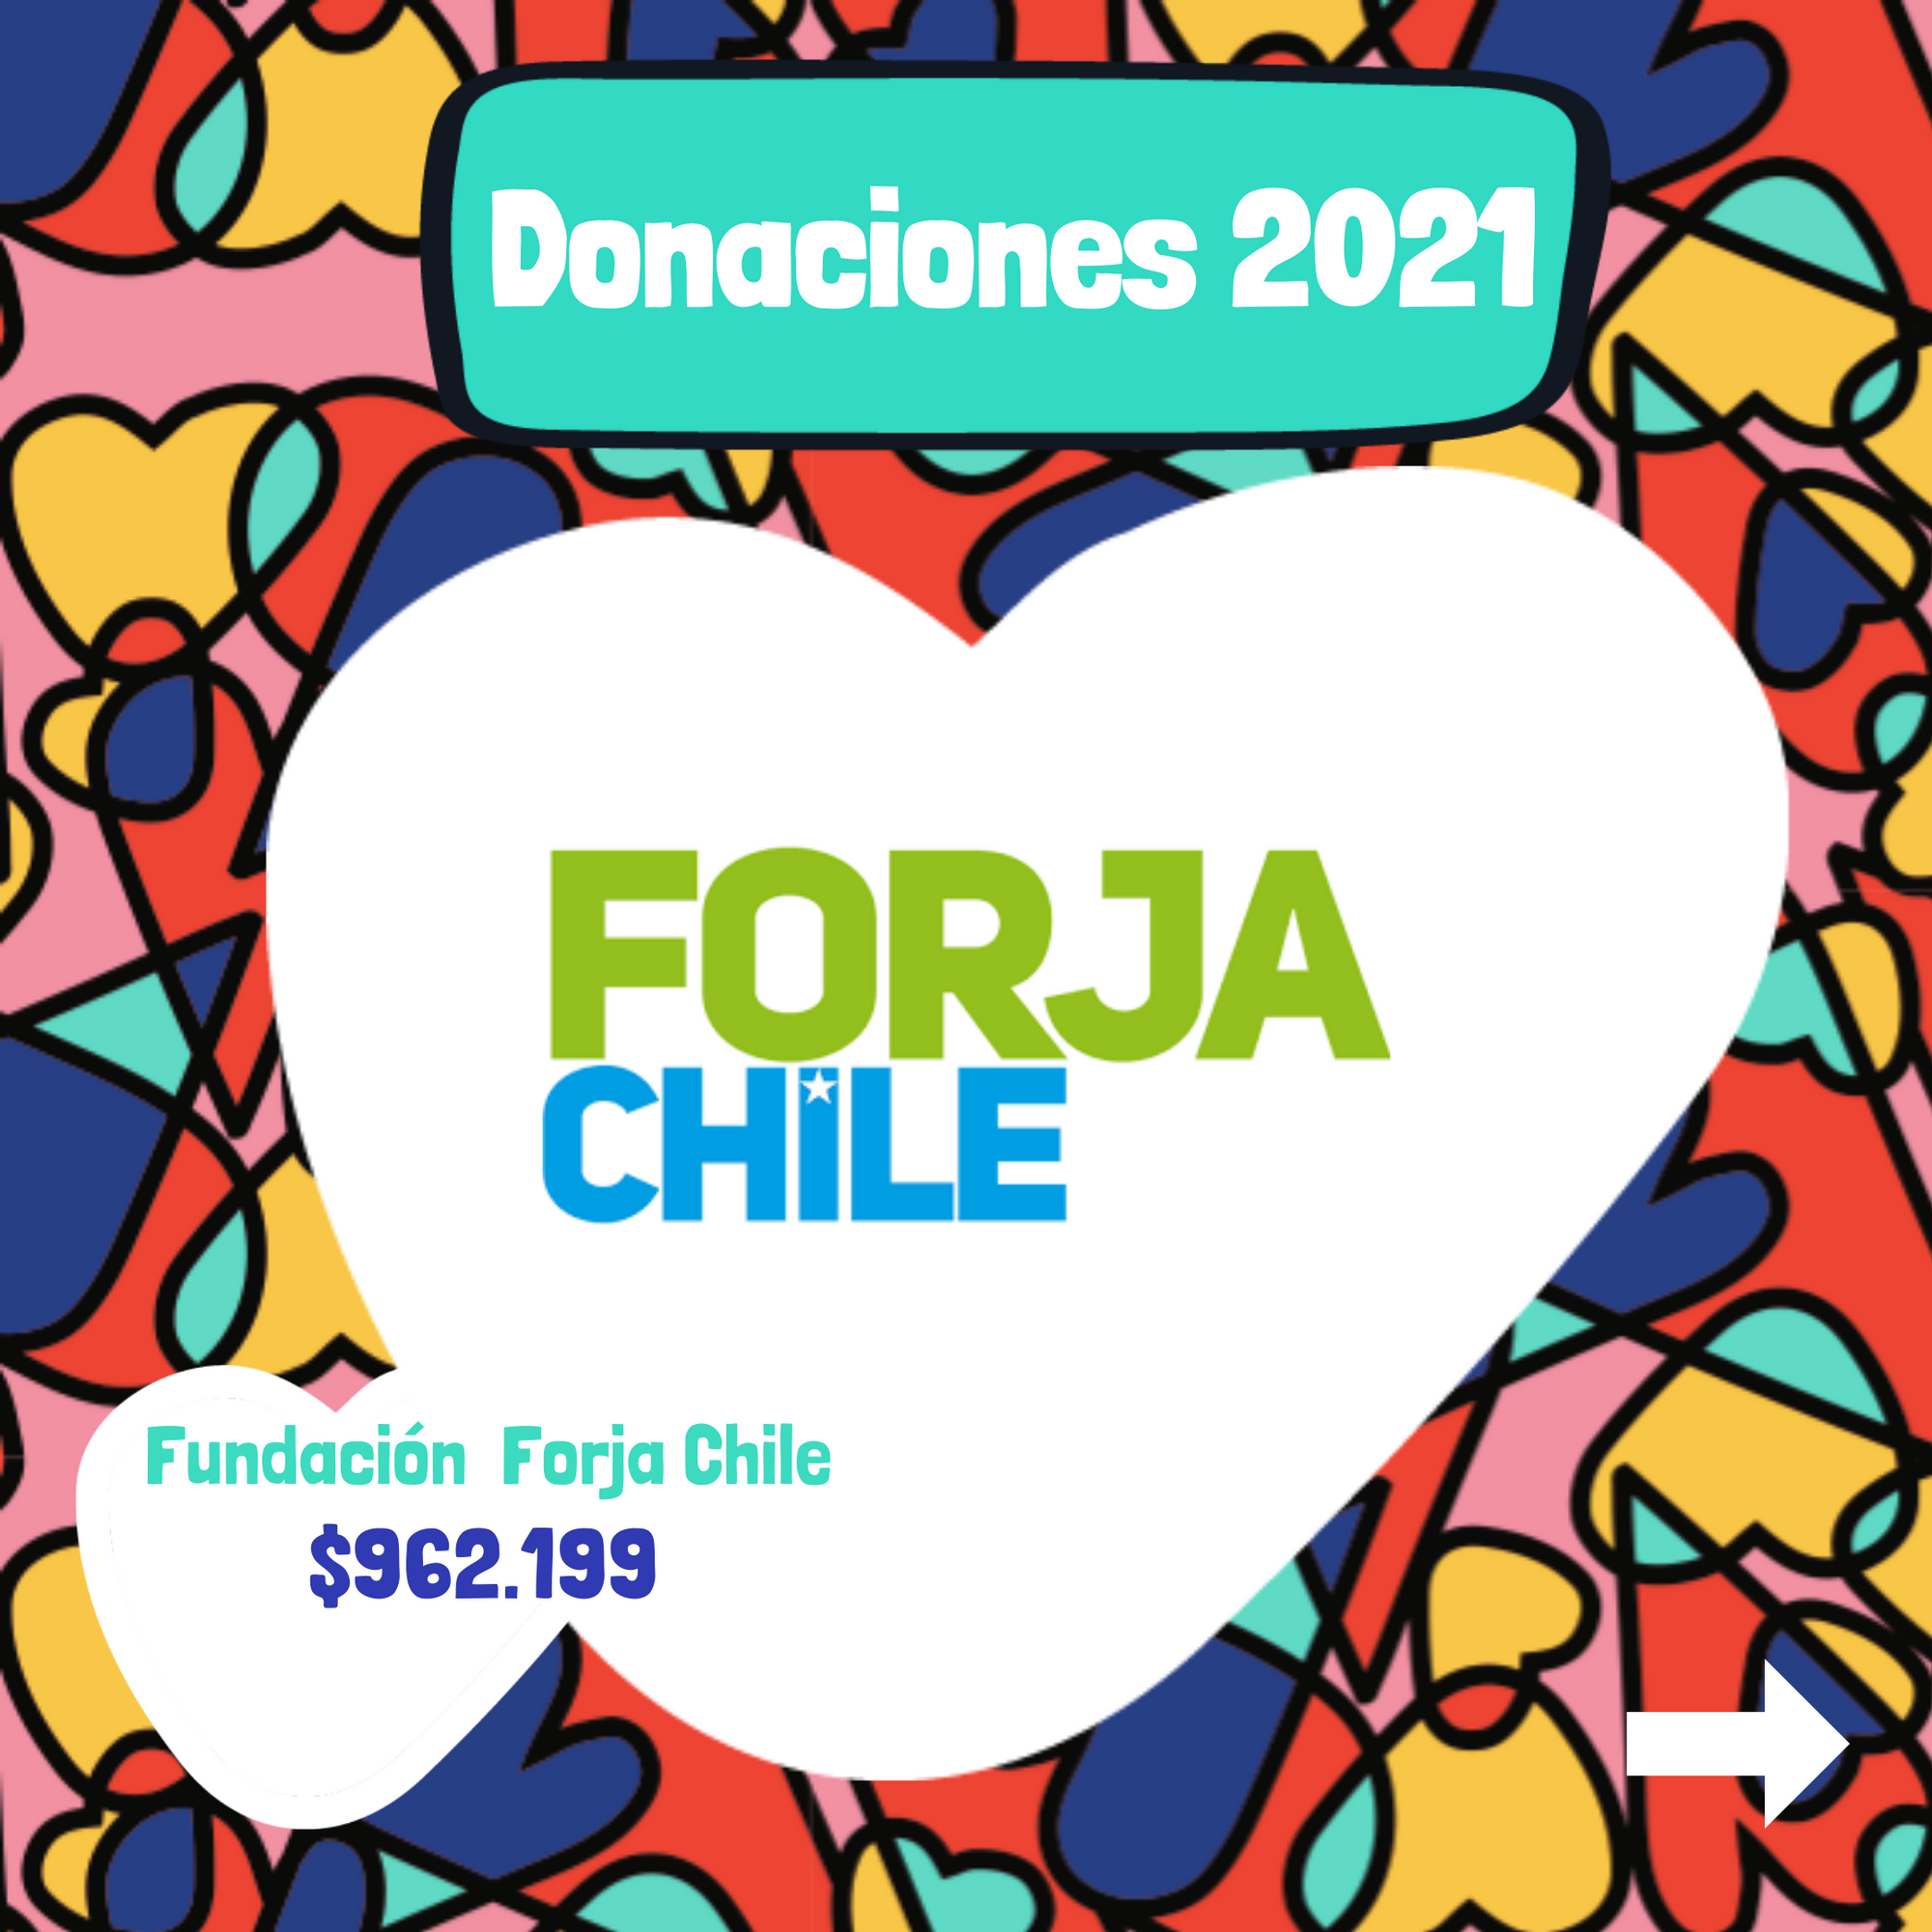 Fundación Forja Chile